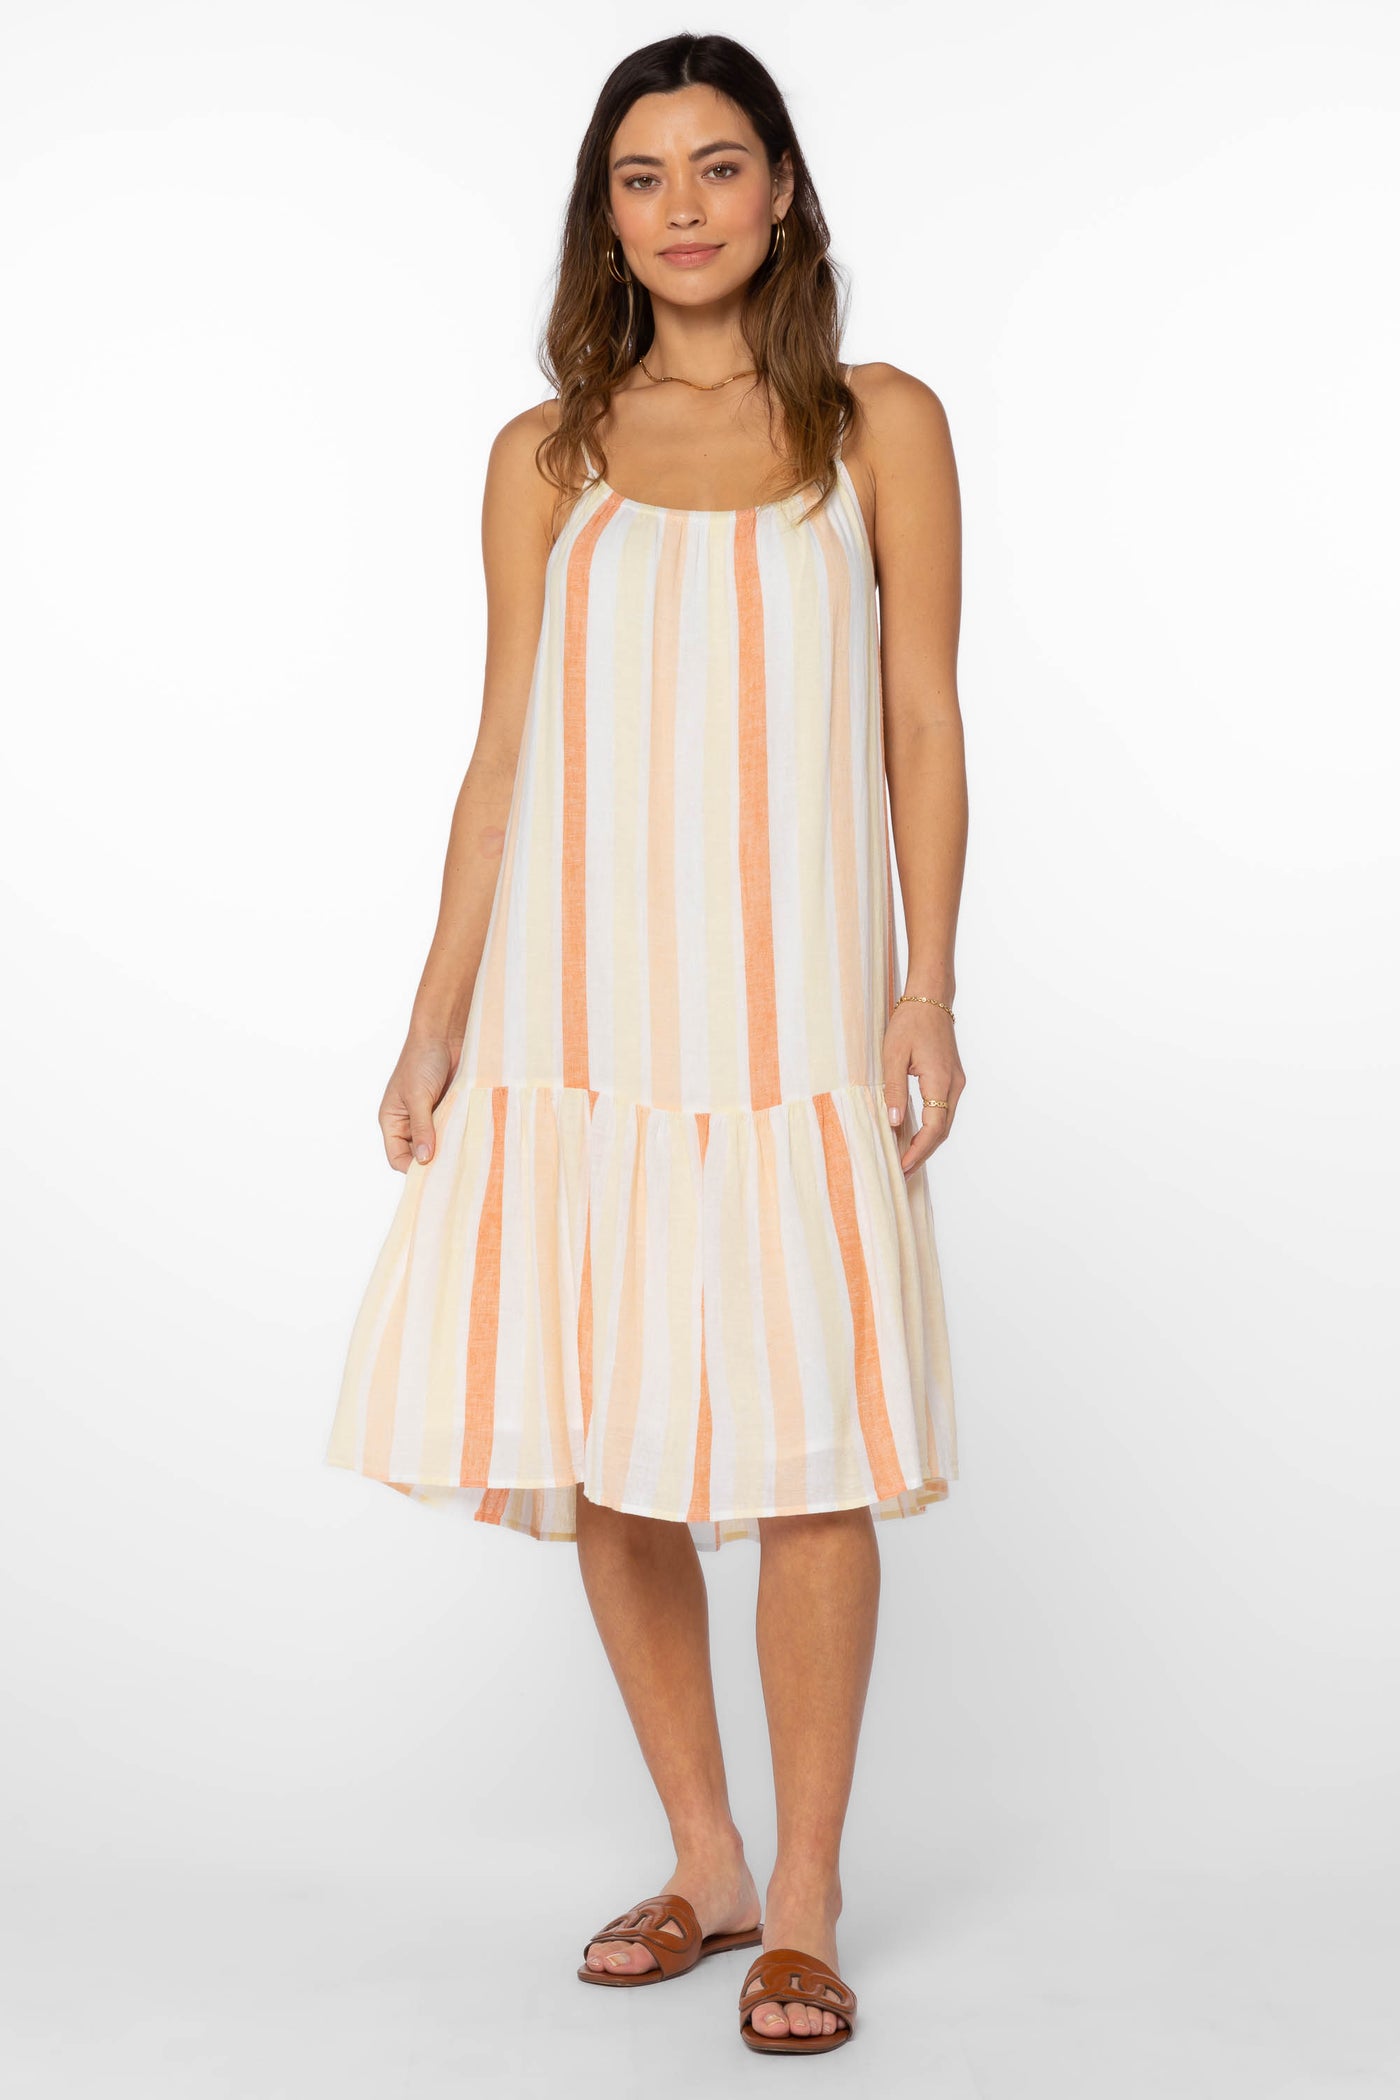 Amelie Orange Stripe Dress - Dresses - Velvet Heart Clothing